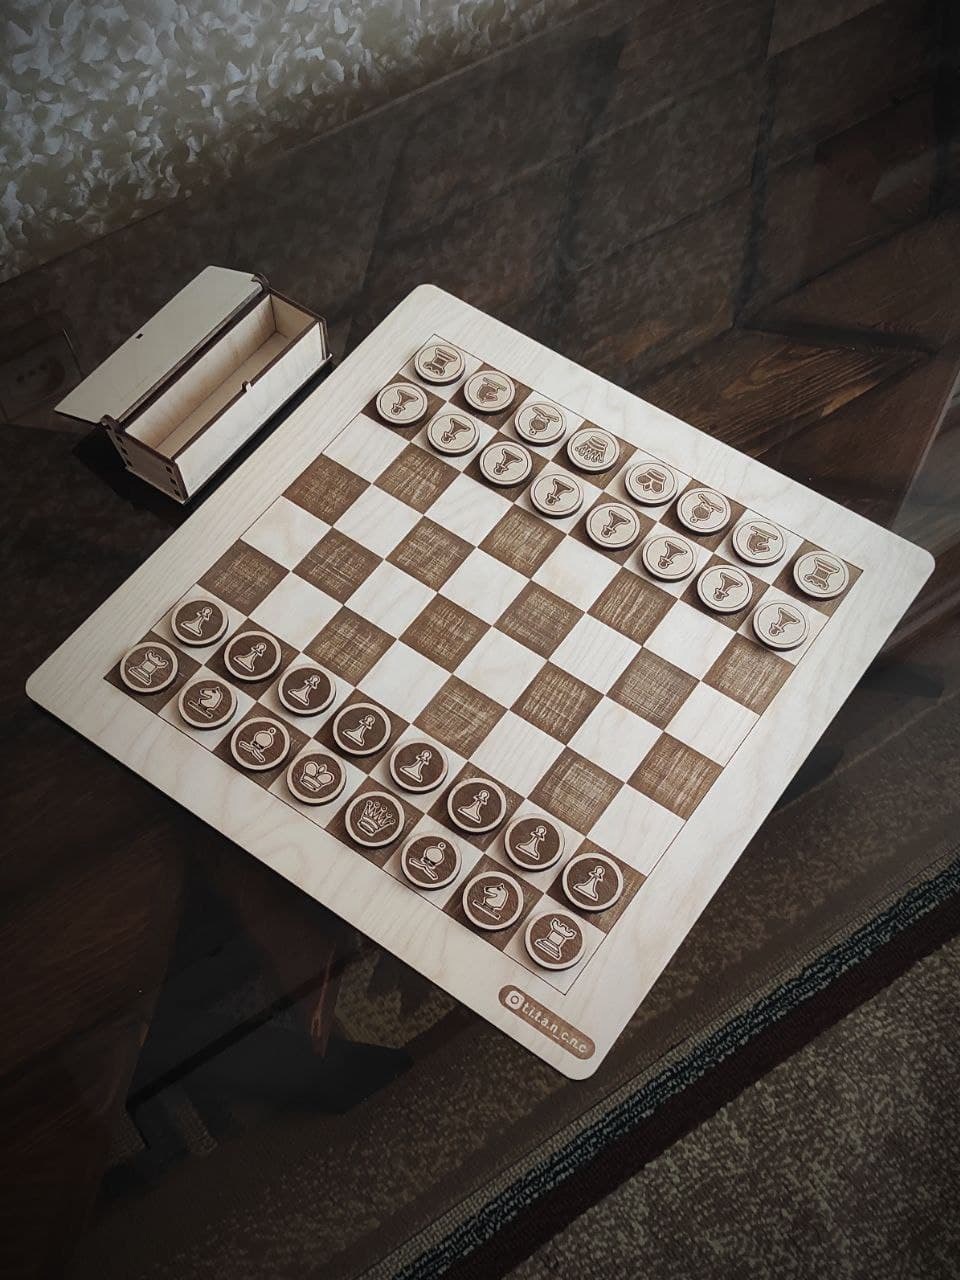 激光切割木制国际象棋套装和盒子